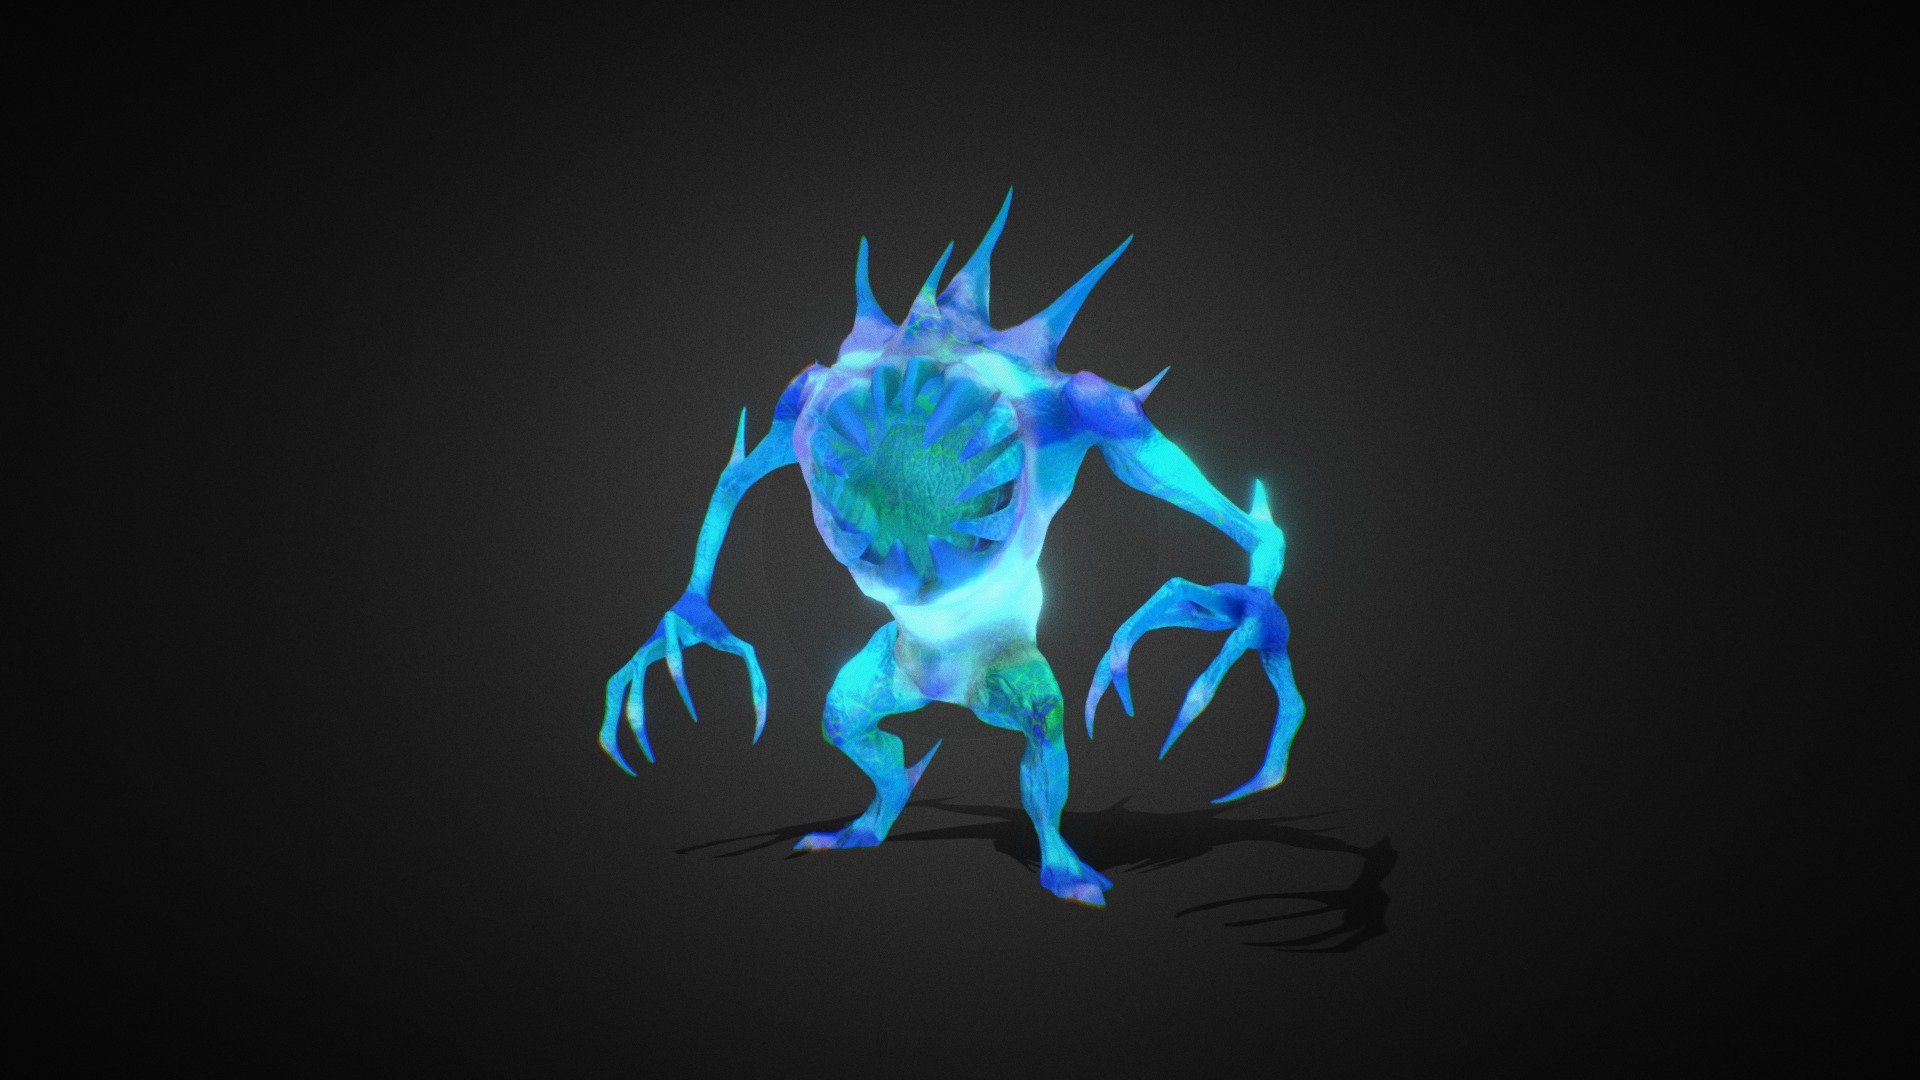 Monster-Golem full animated - ready for your games 3d model